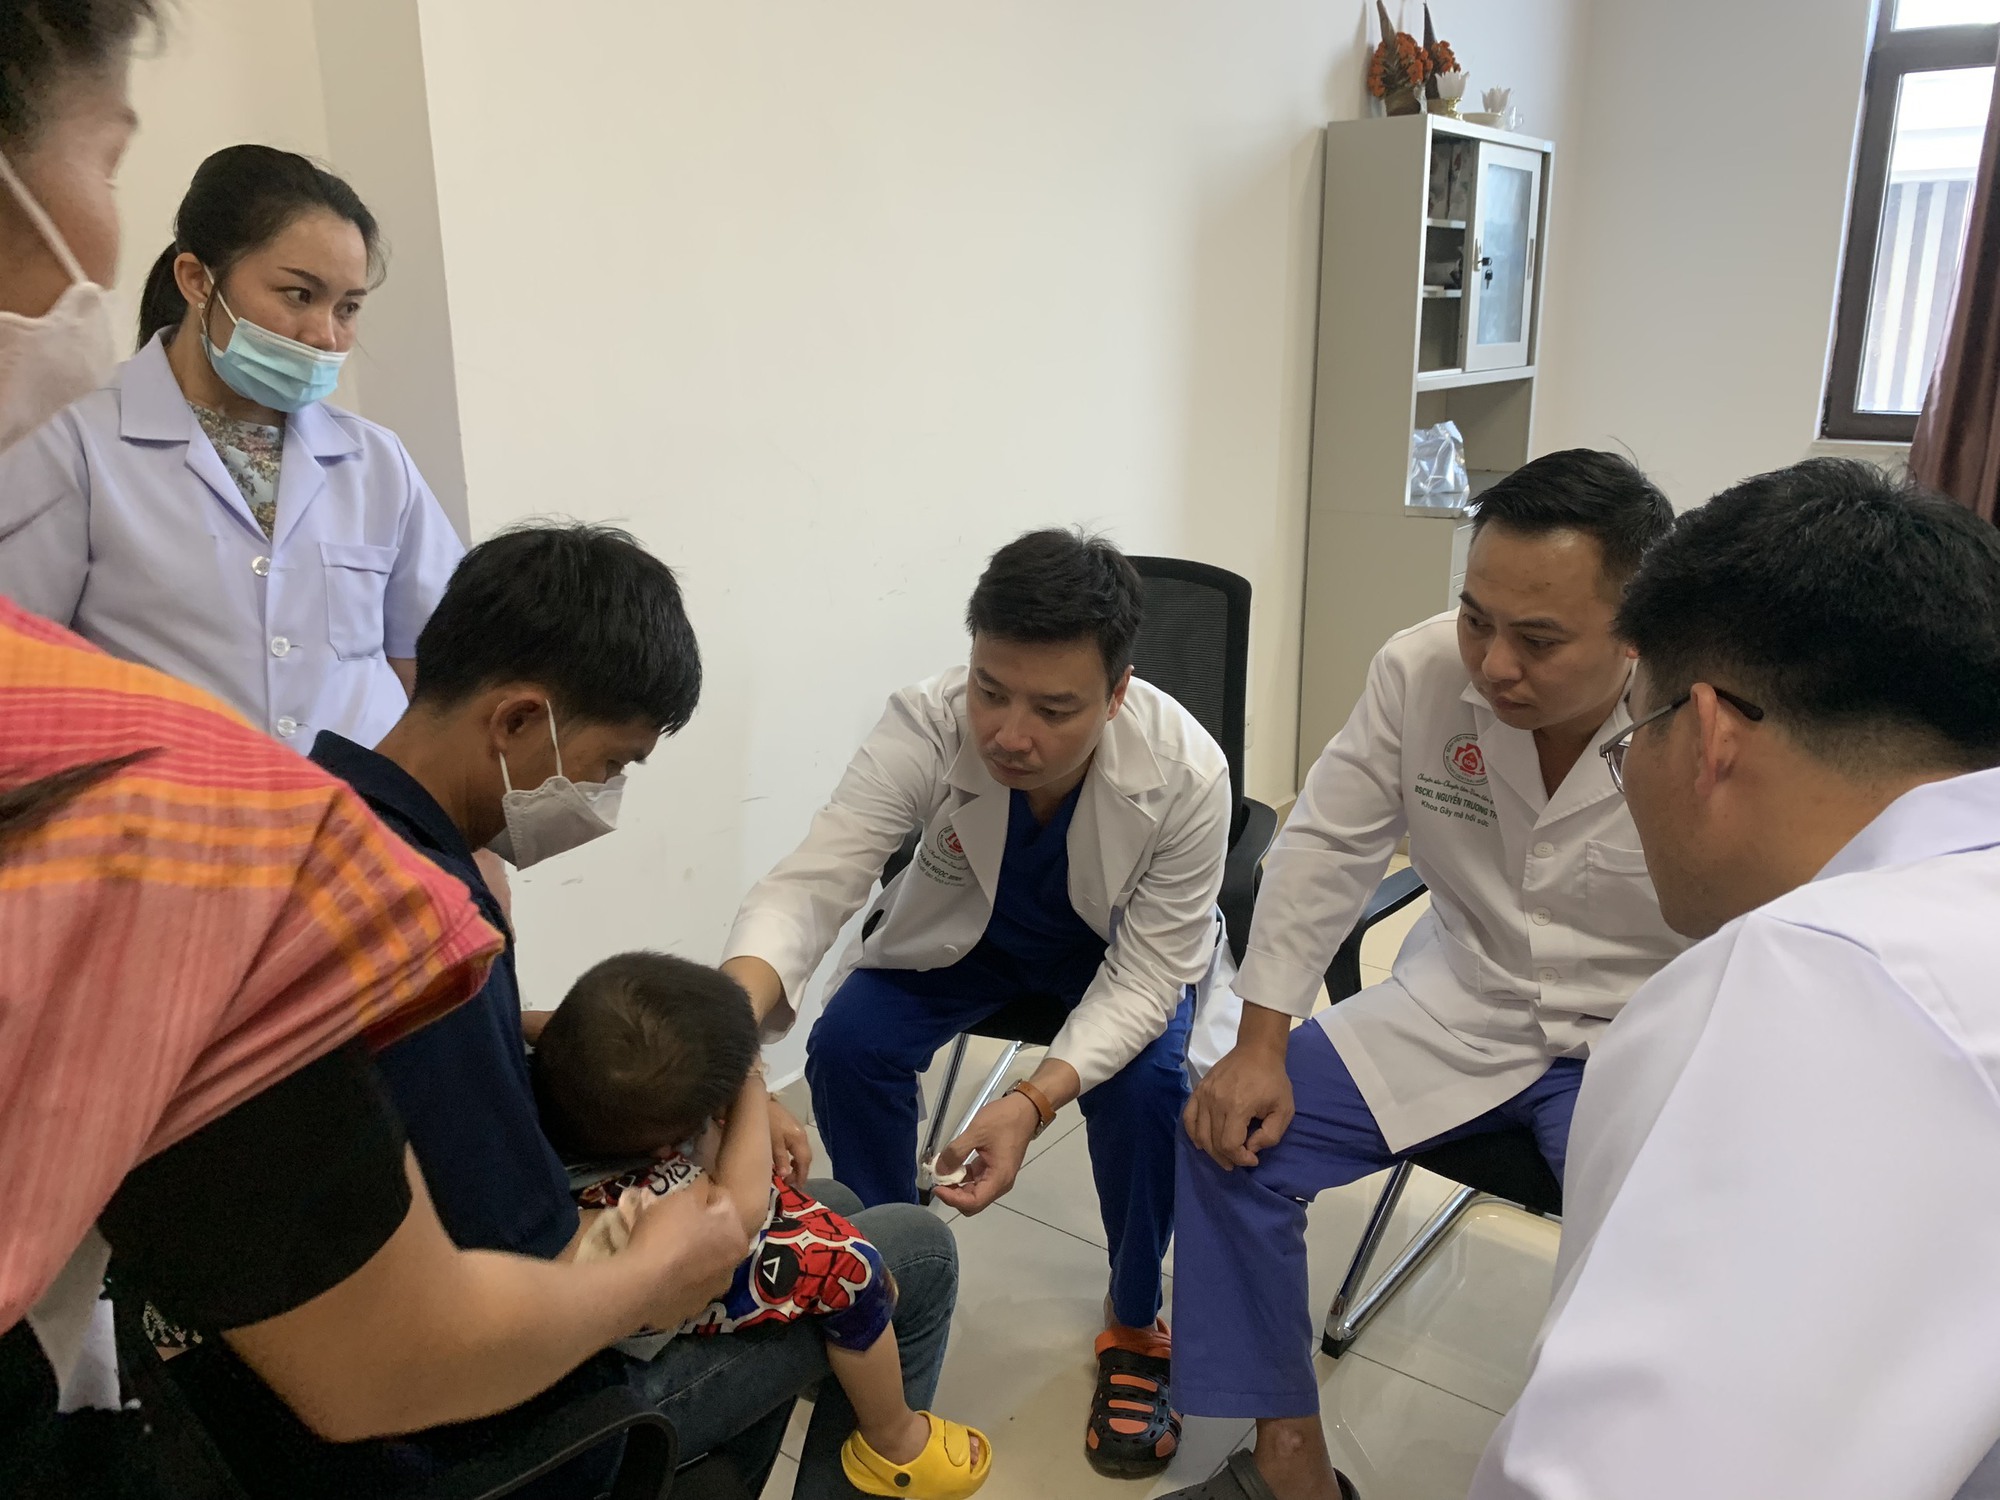 Chuyến công tác “đặc biệt” của vị bác sĩ bệnh viện 108 trên nước bạn Lào - Ảnh 1.